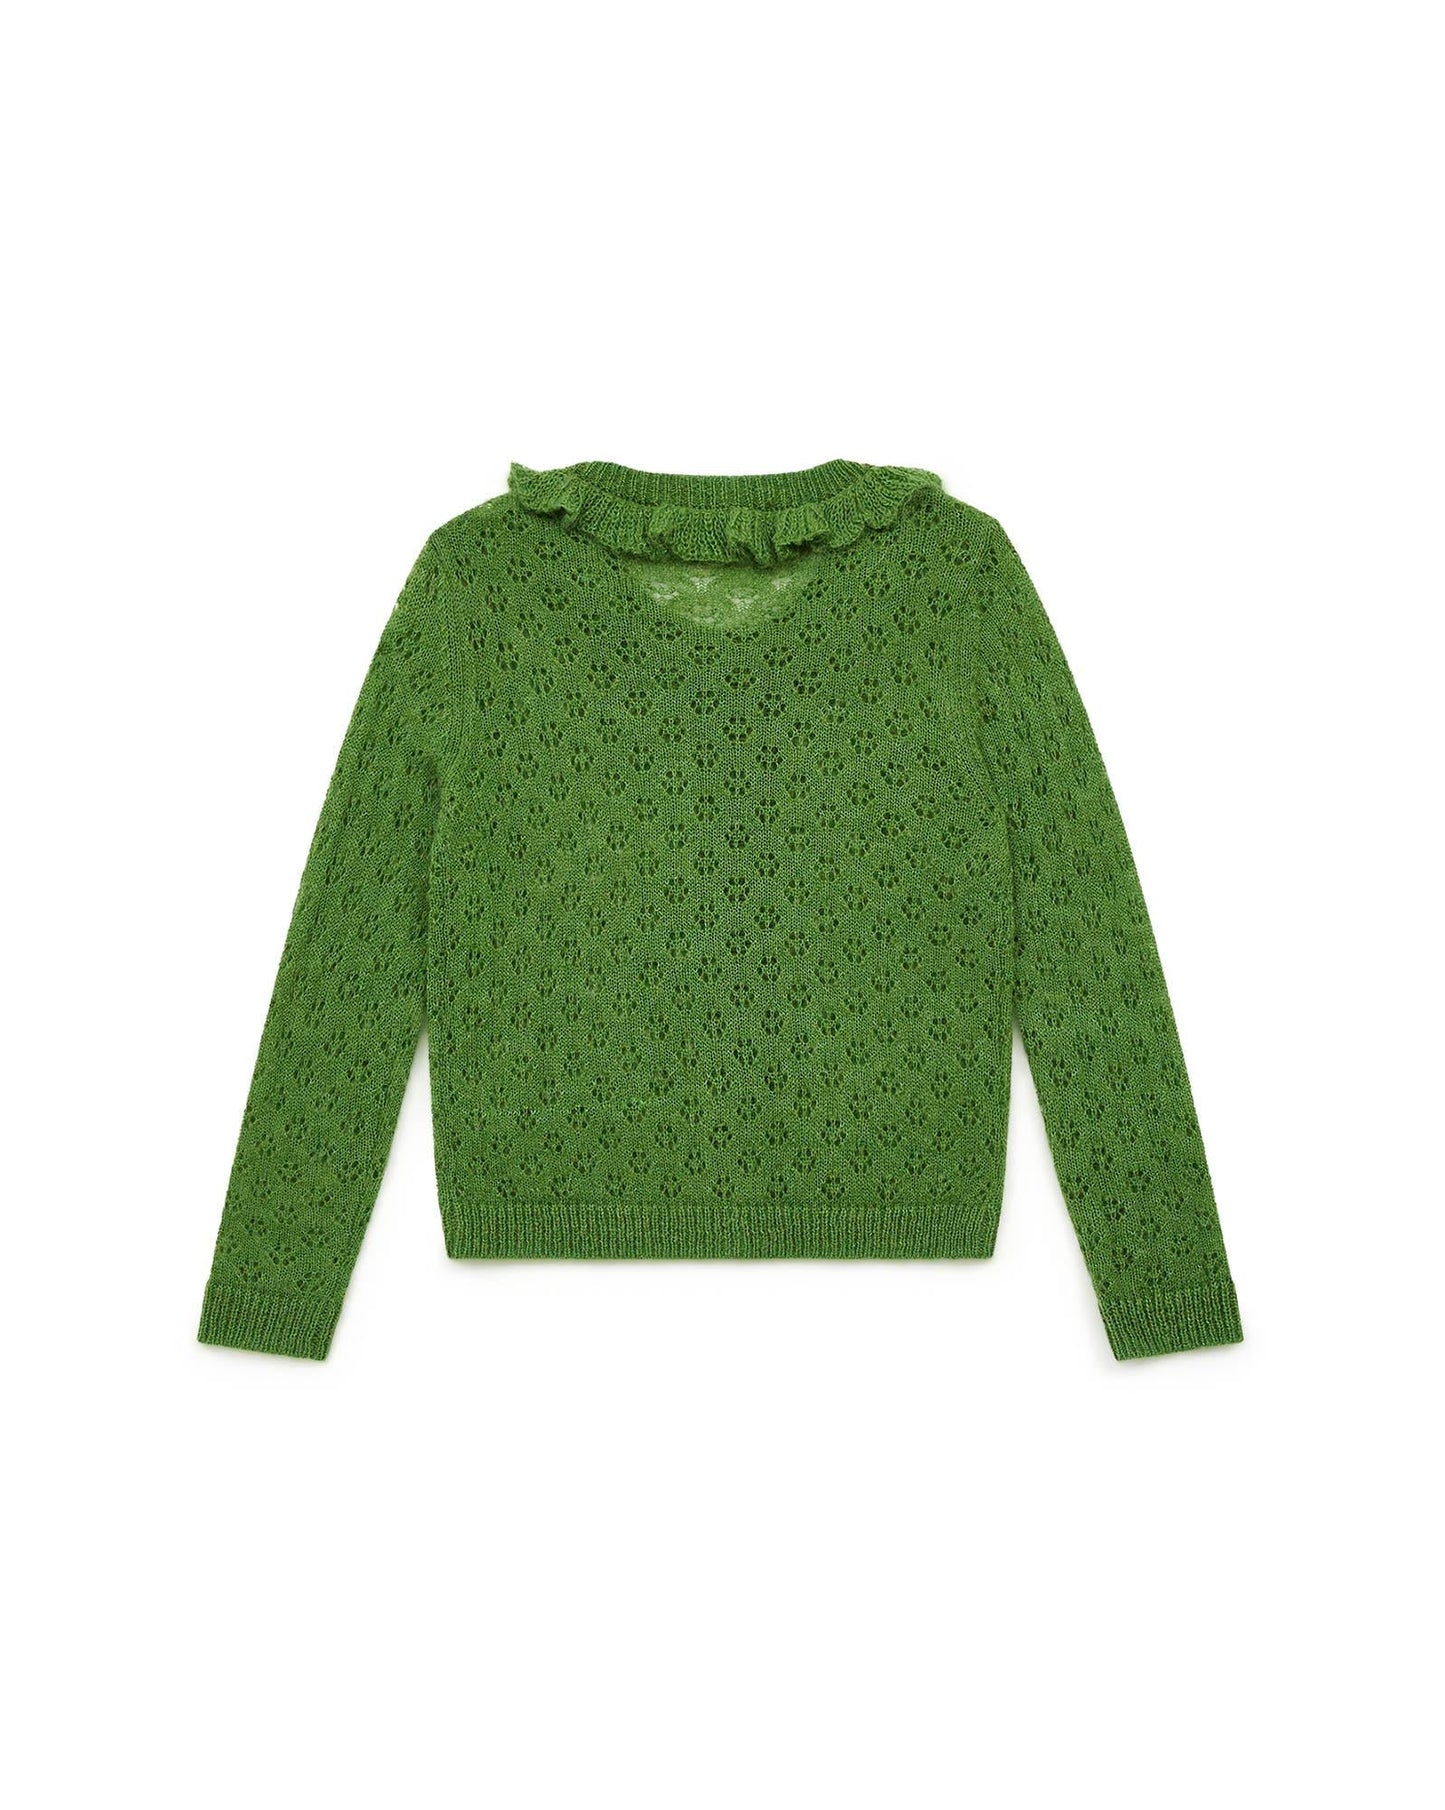 Cardigan - Corolle vert en tricot ajouré